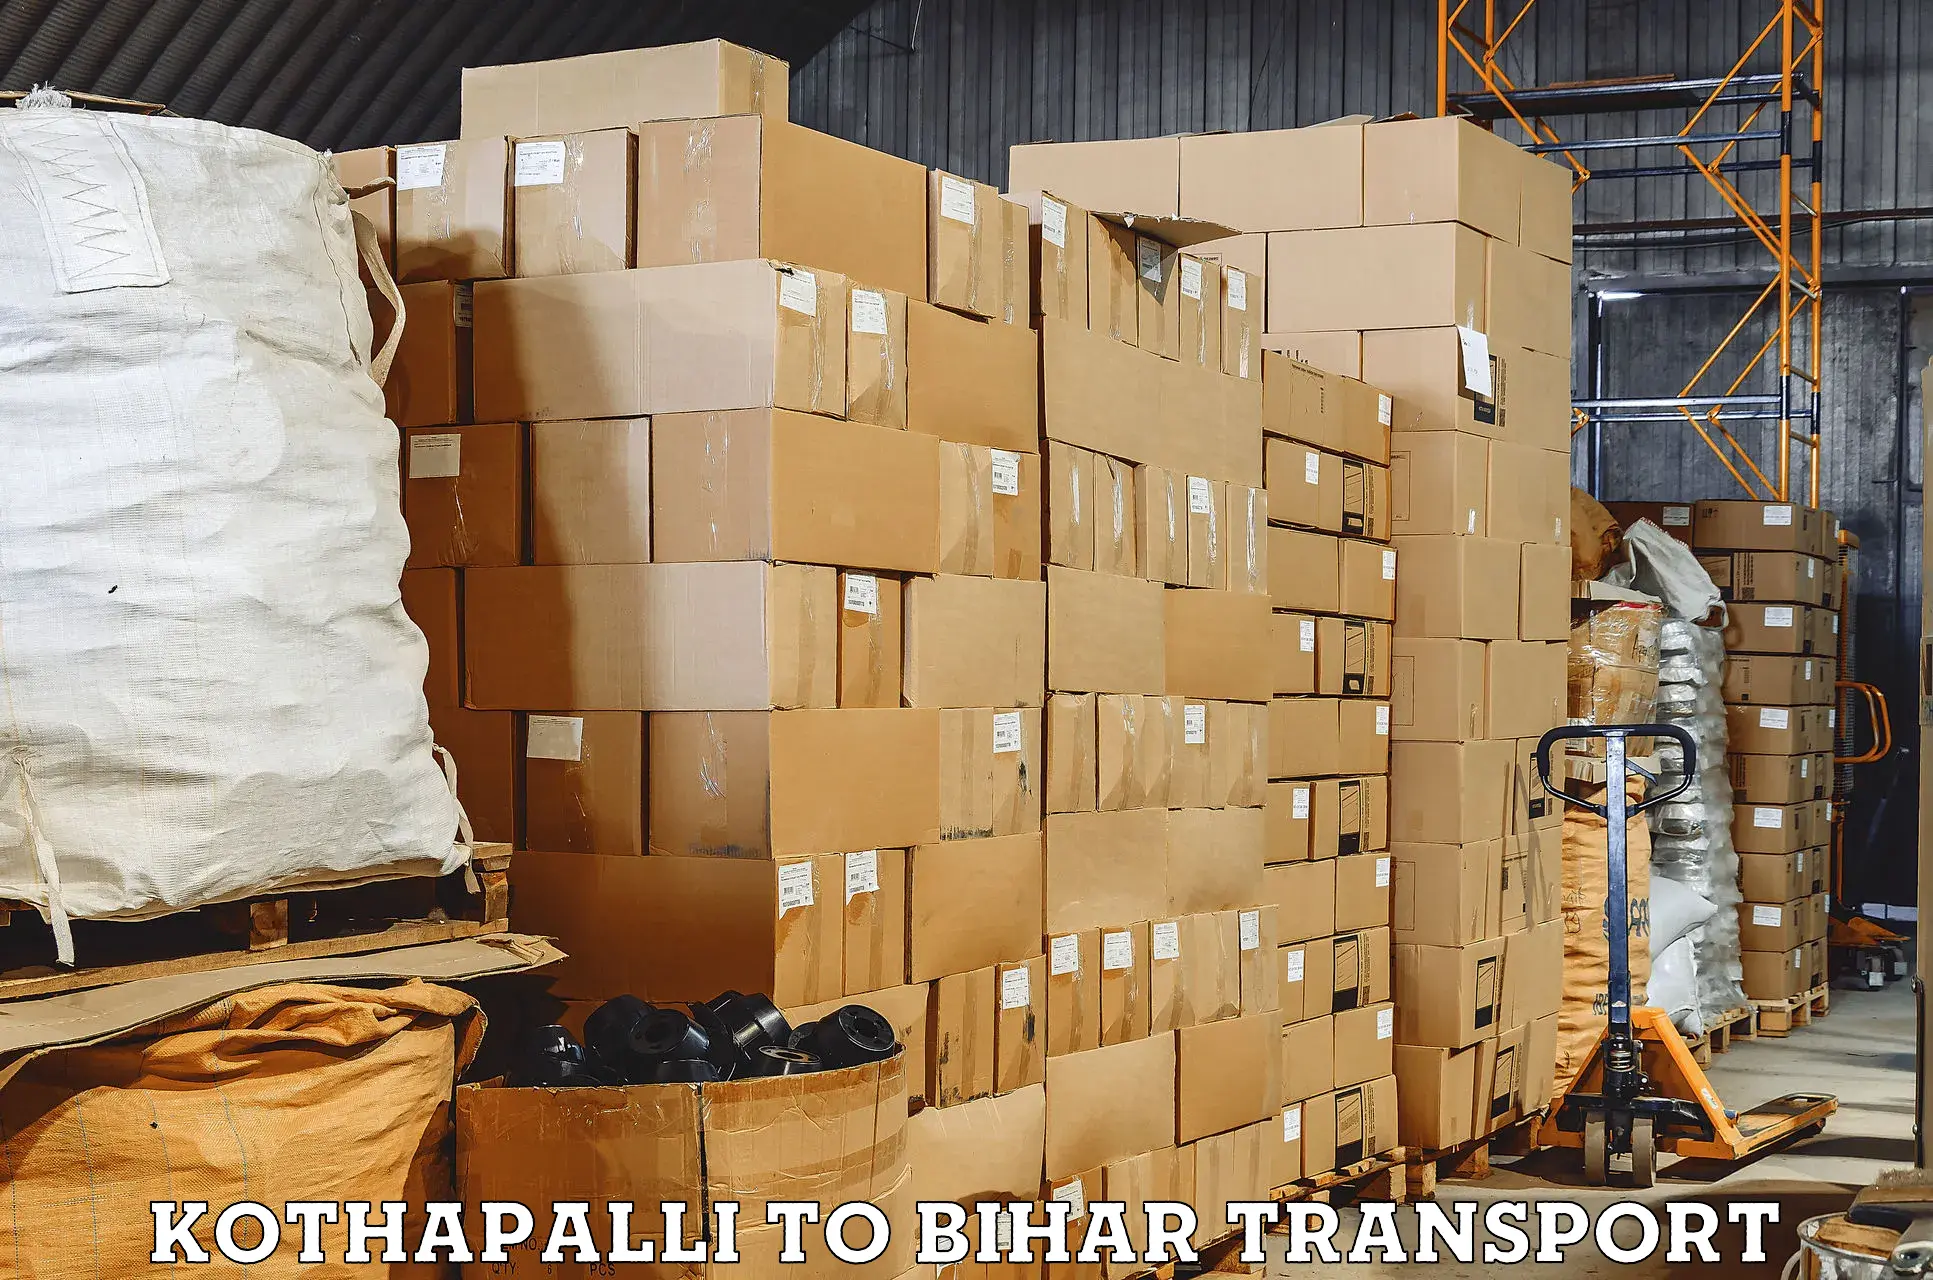 Lorry transport service Kothapalli to Katoria